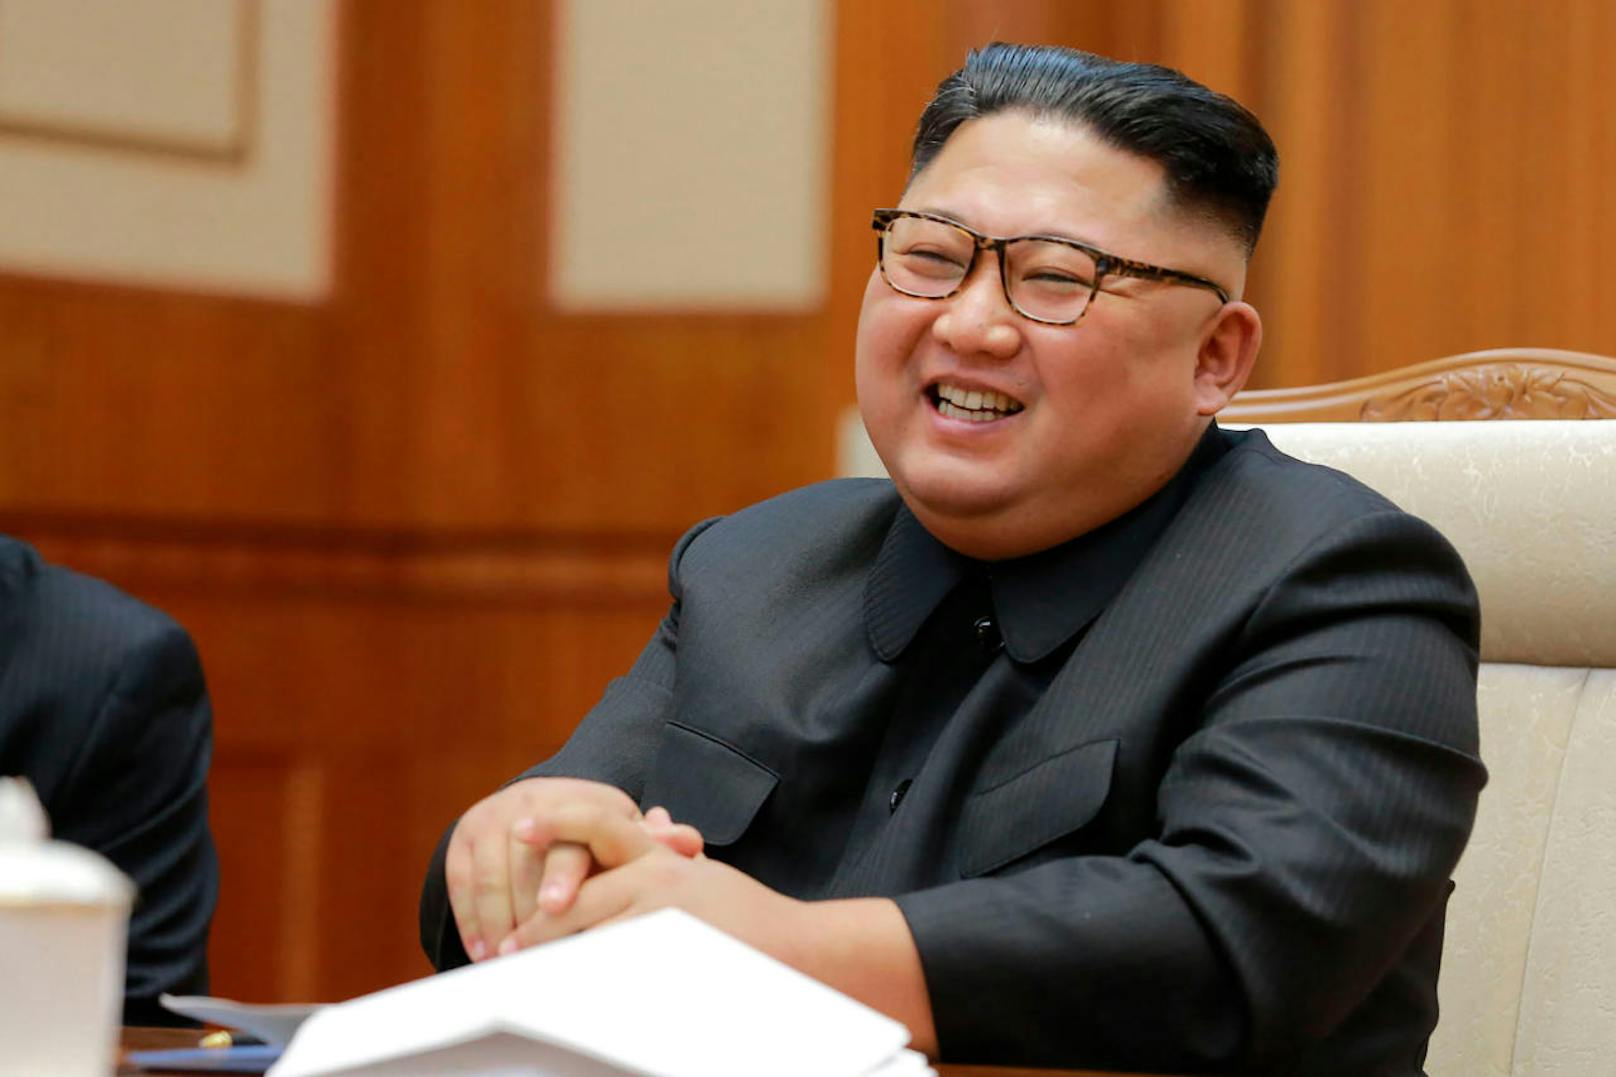 "Dank unserer zuverlässigen und wirksamen nuklearen Abschreckung zur Selbstverteidigung wird es ein Wort wie Krieg in diesem Land nicht mehr geben", so der nordkoreanische Machthaber Kim Jong-un.